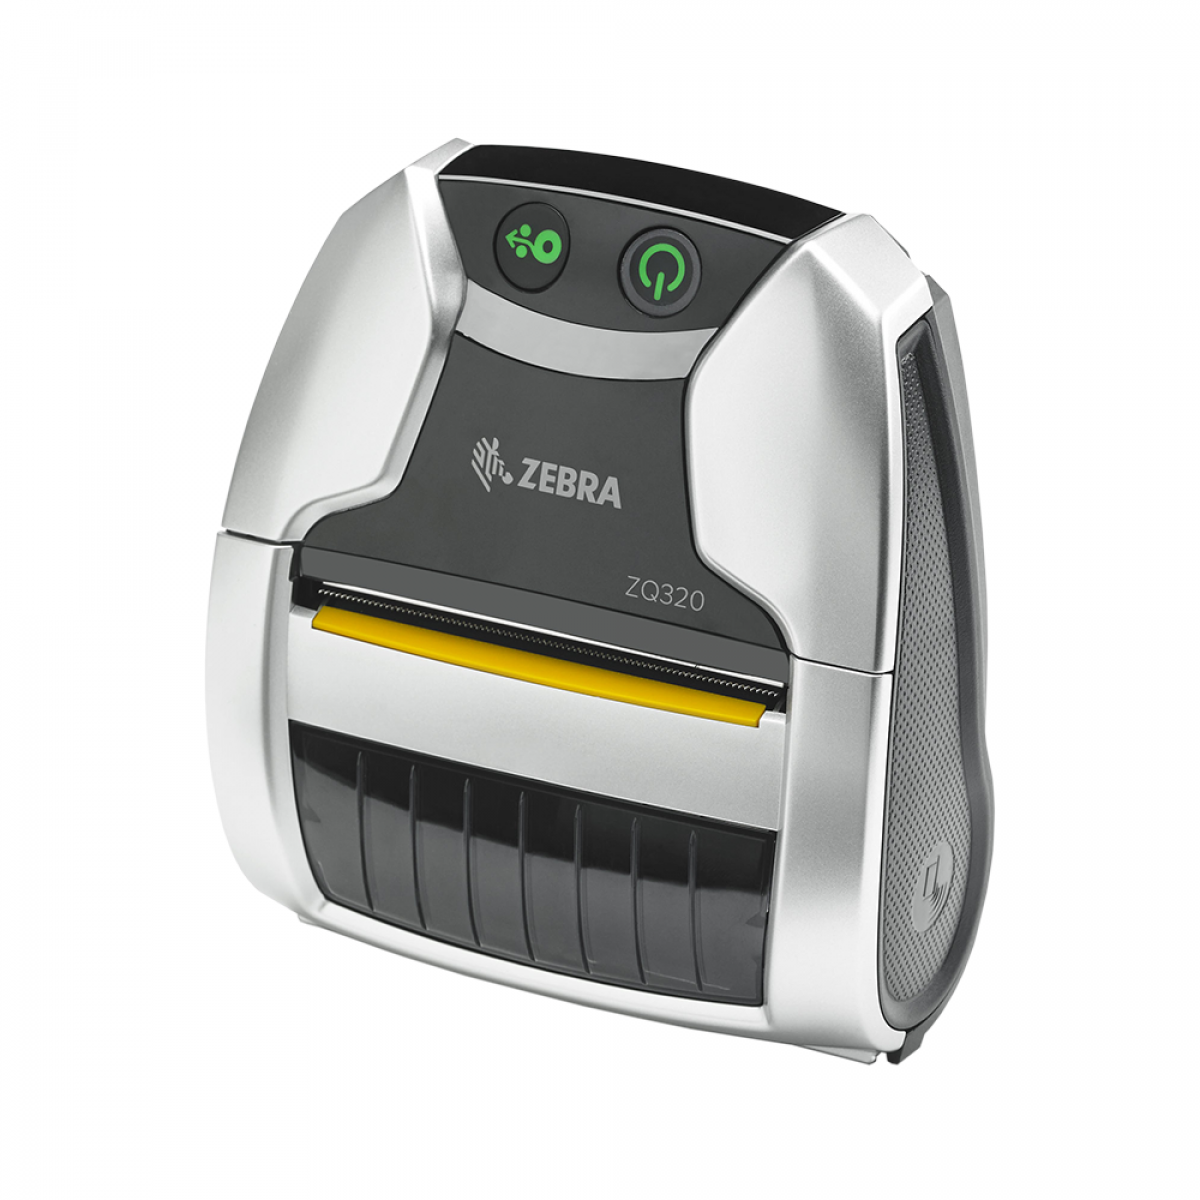 Zebra ZQ320 In-Premise mobile printer